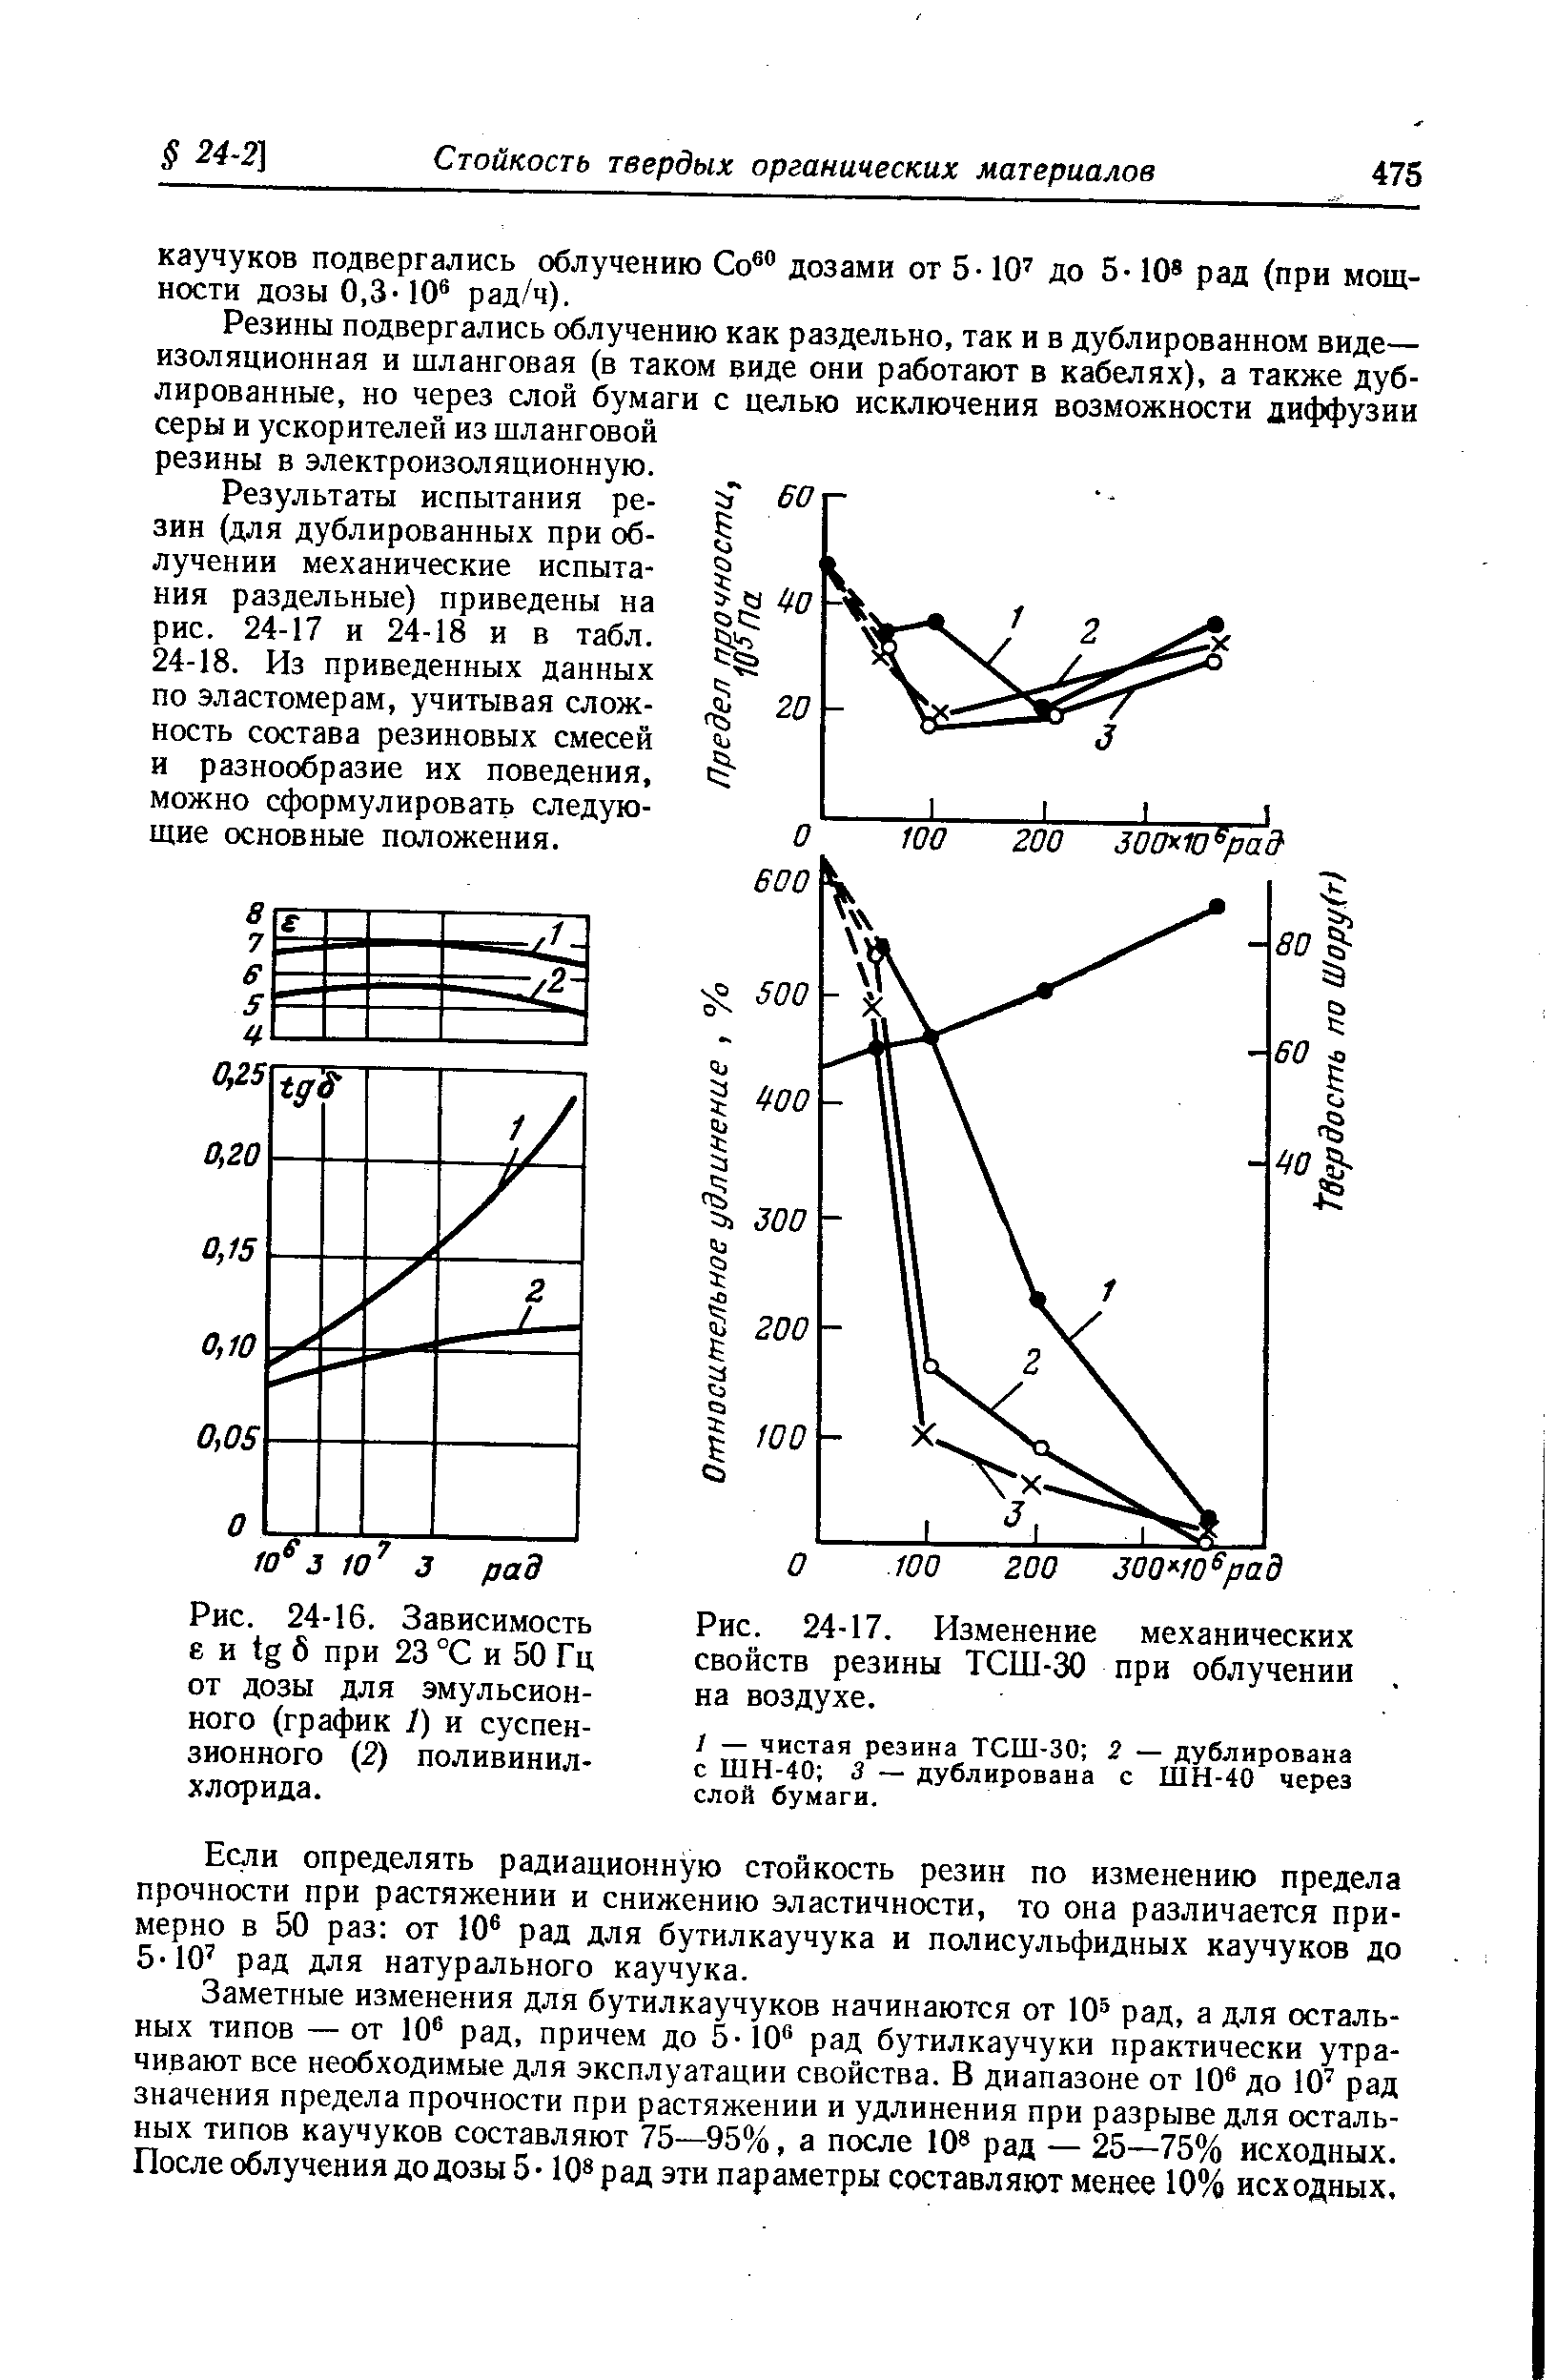 Рис. 24-16. Зависимость е и tg б при 23 °С и 50 Гц от дозы для эмульсионного (график 1) и суспензионного (2) поливинилхлорида.
